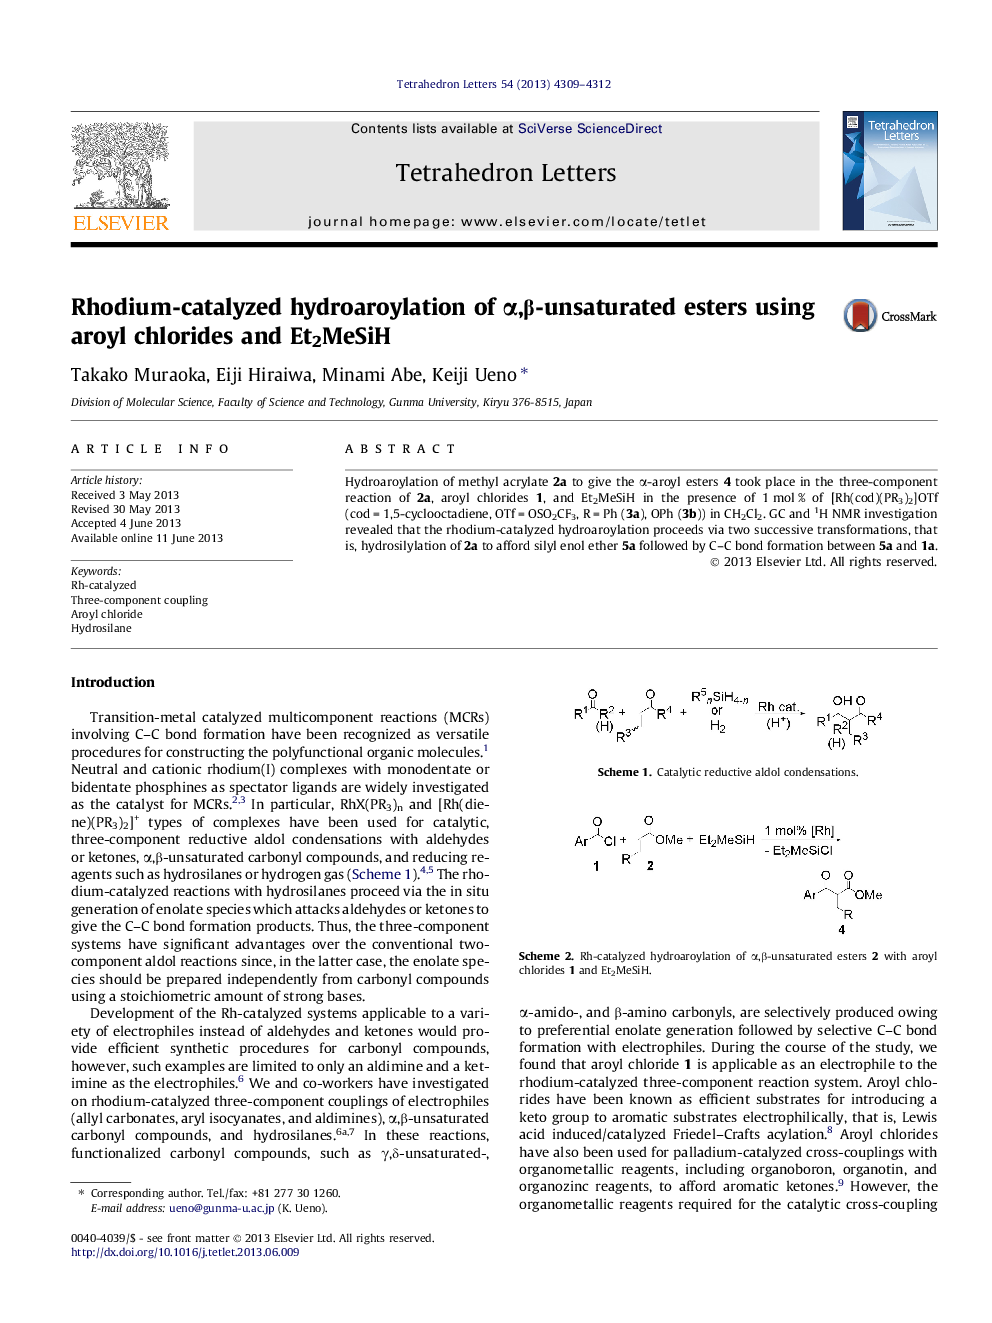 Rhodium-catalyzed hydroaroylation of Î±,Î²-unsaturated esters using aroyl chlorides and Et2MeSiH